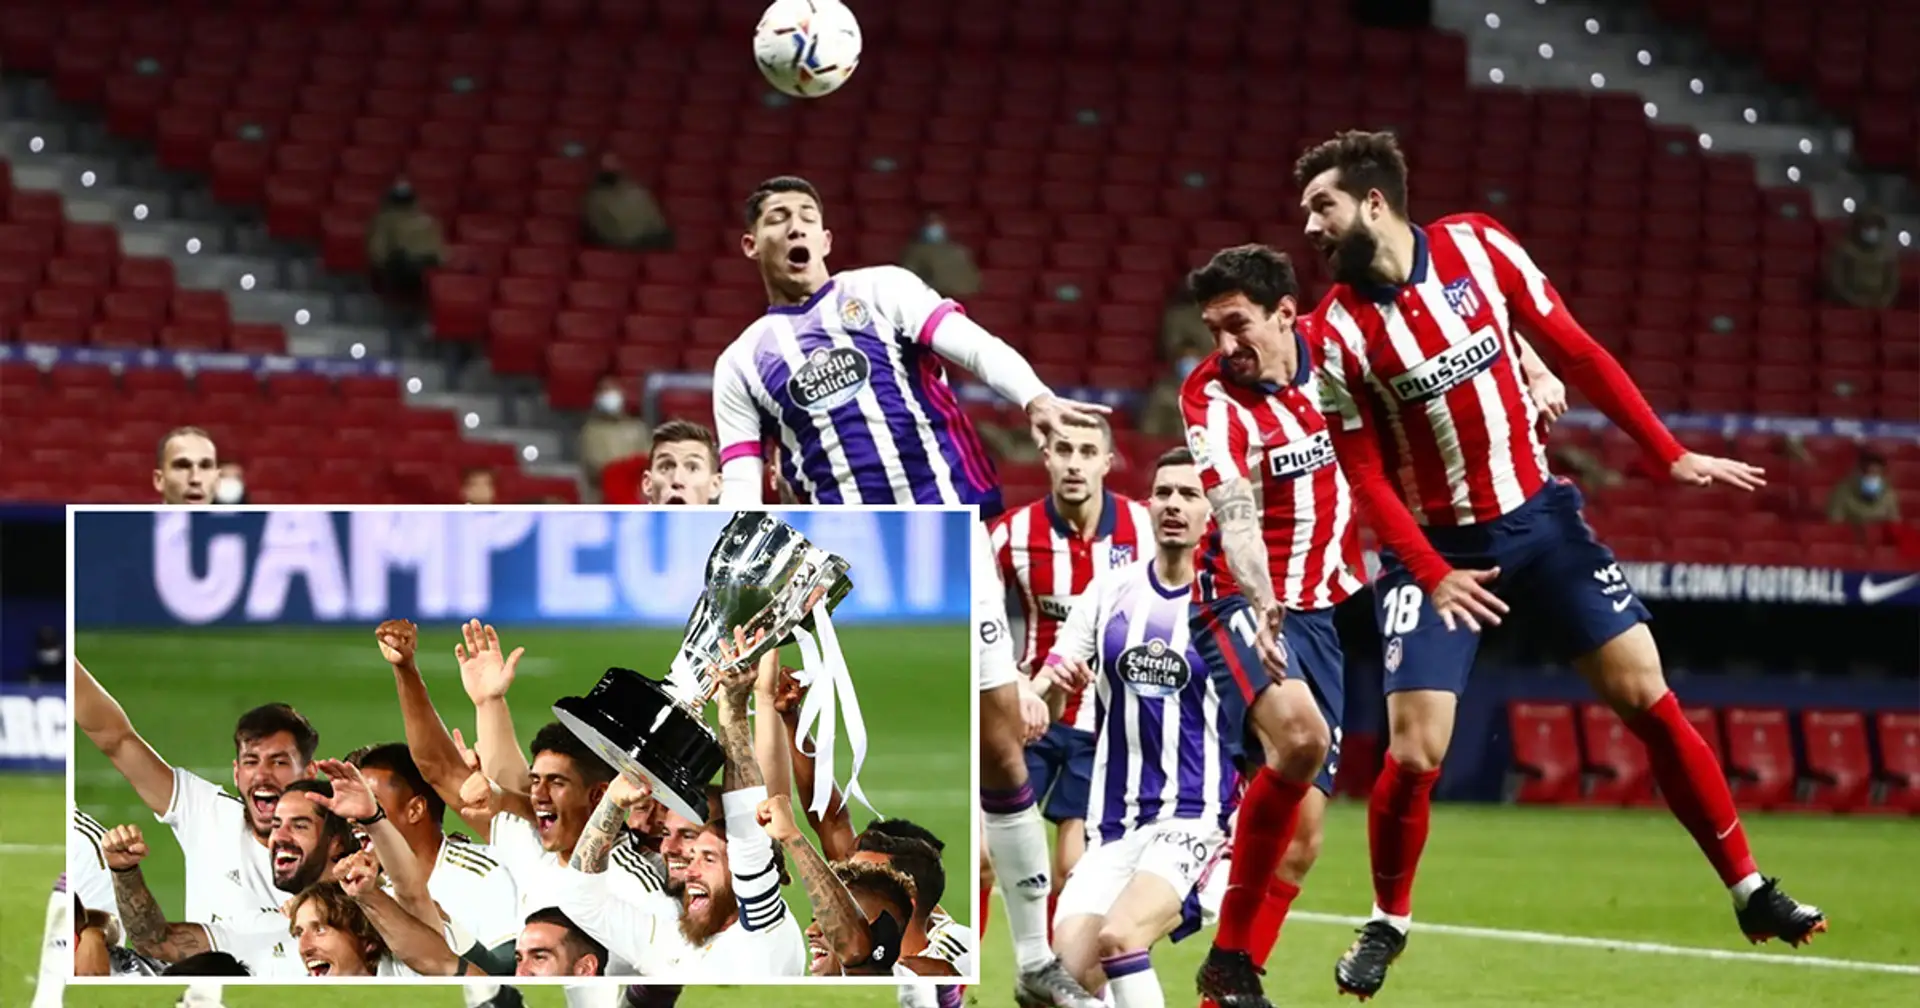 ¿Qué últimos resultados entre el Valladolid y Atlético le servirían al Madrid?